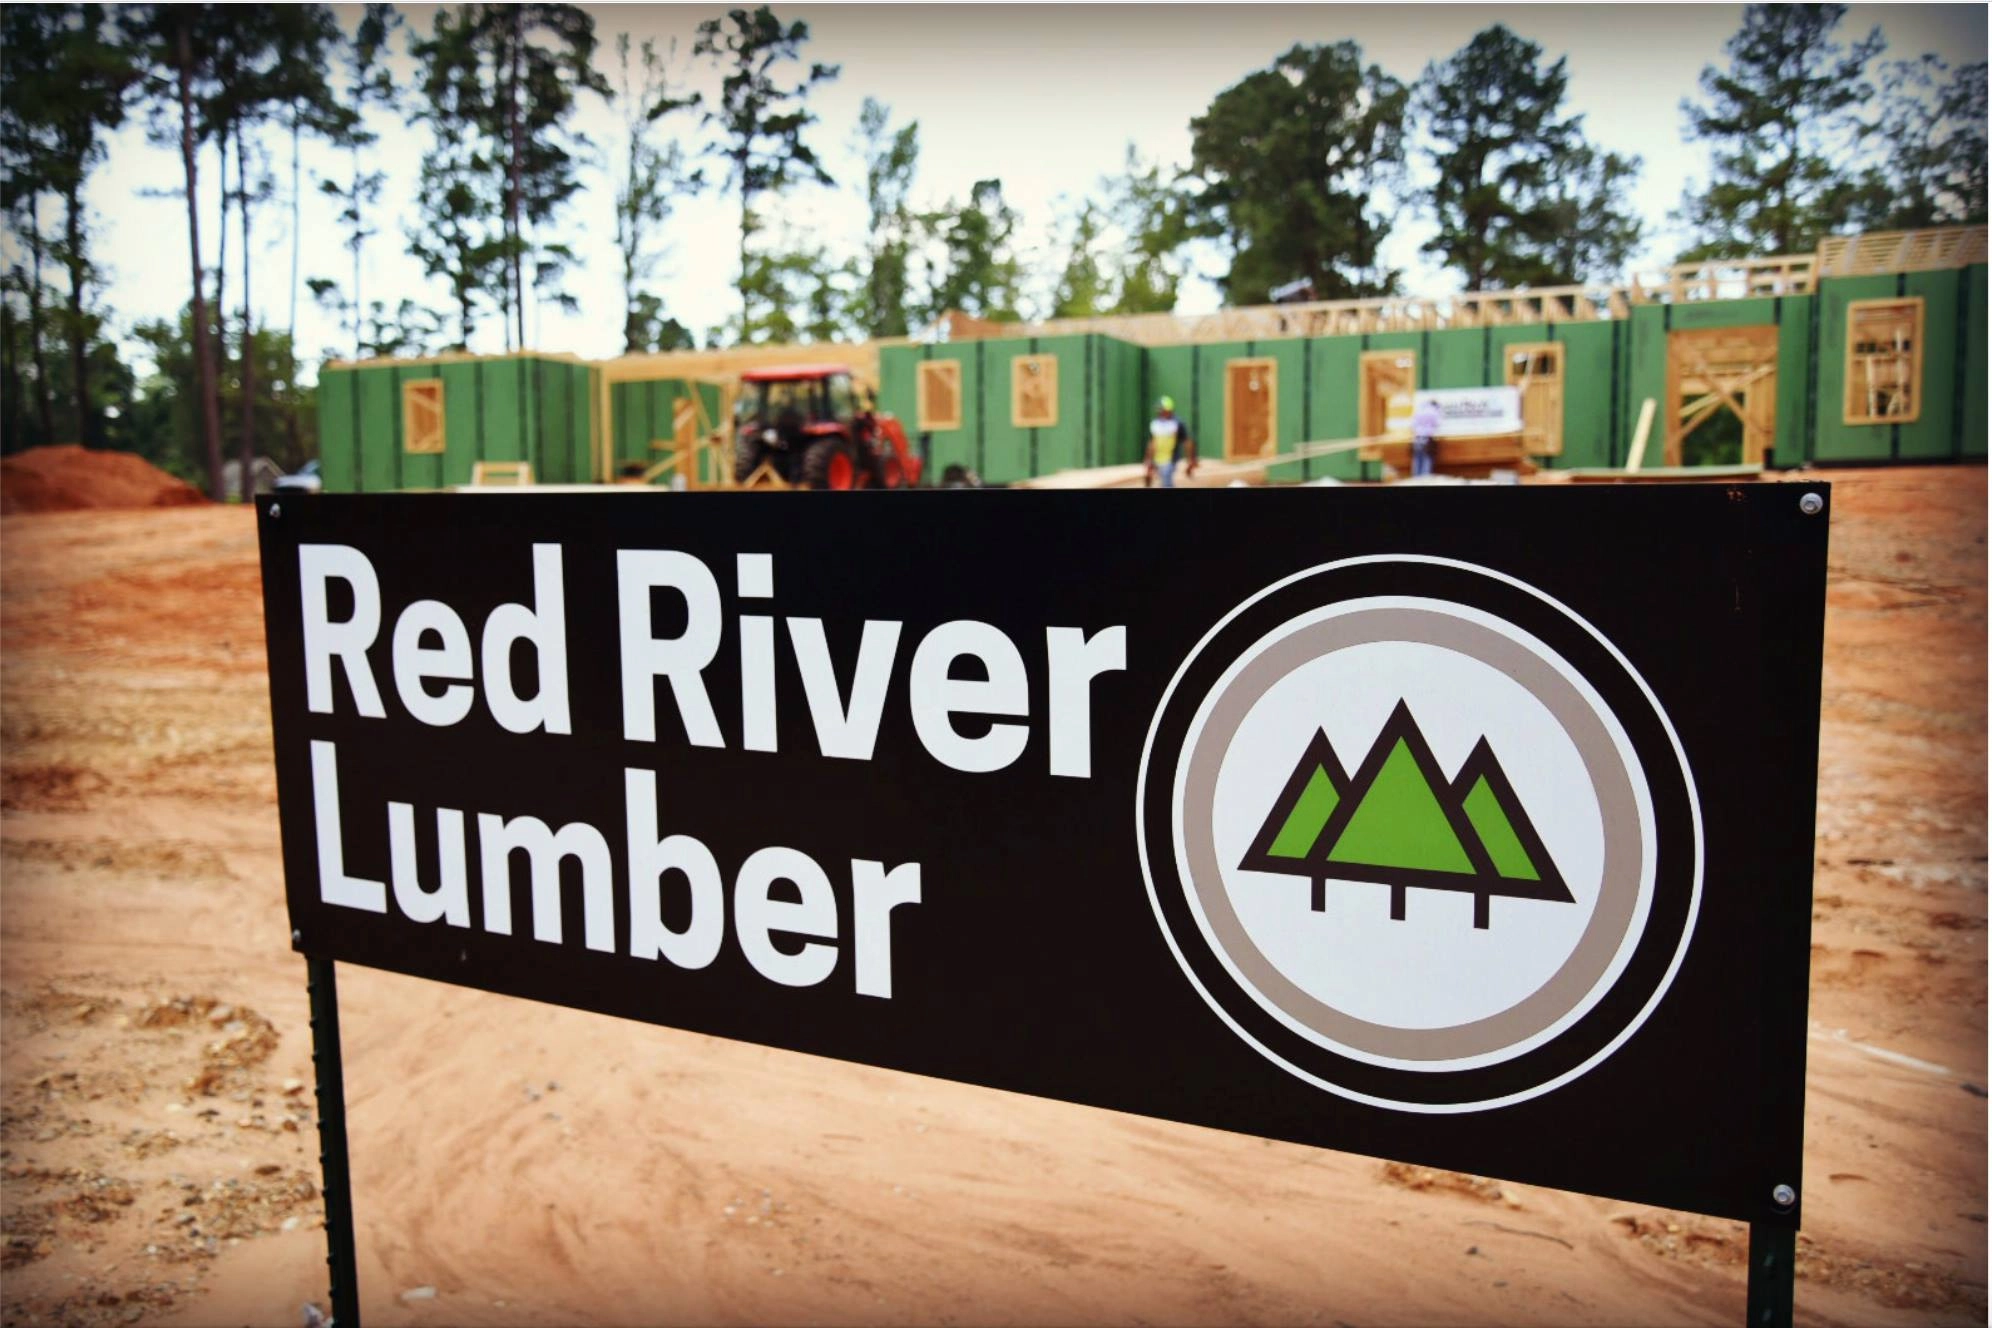 Red River Lumber Logo